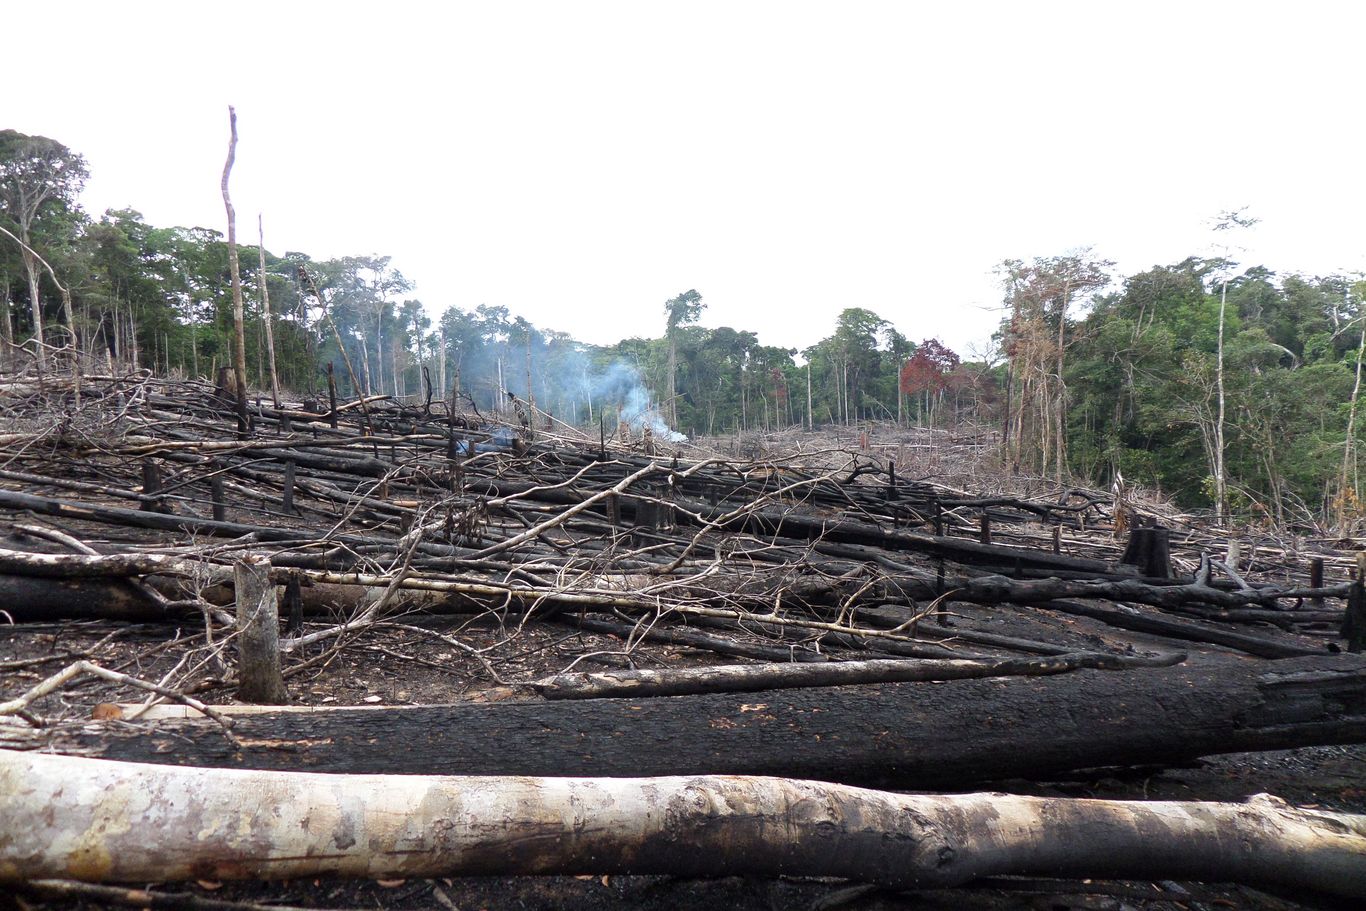 Abgeholzter Regenwald. Die dramatische Abholzung raubt den Indigenen die Lebensgrundlage und missachtet die in der Verfassung festgelegten Rechte. Die Regierung steht auf Seiten der multinationalen Konzerne und kurbelt die Ausbeutung an. 